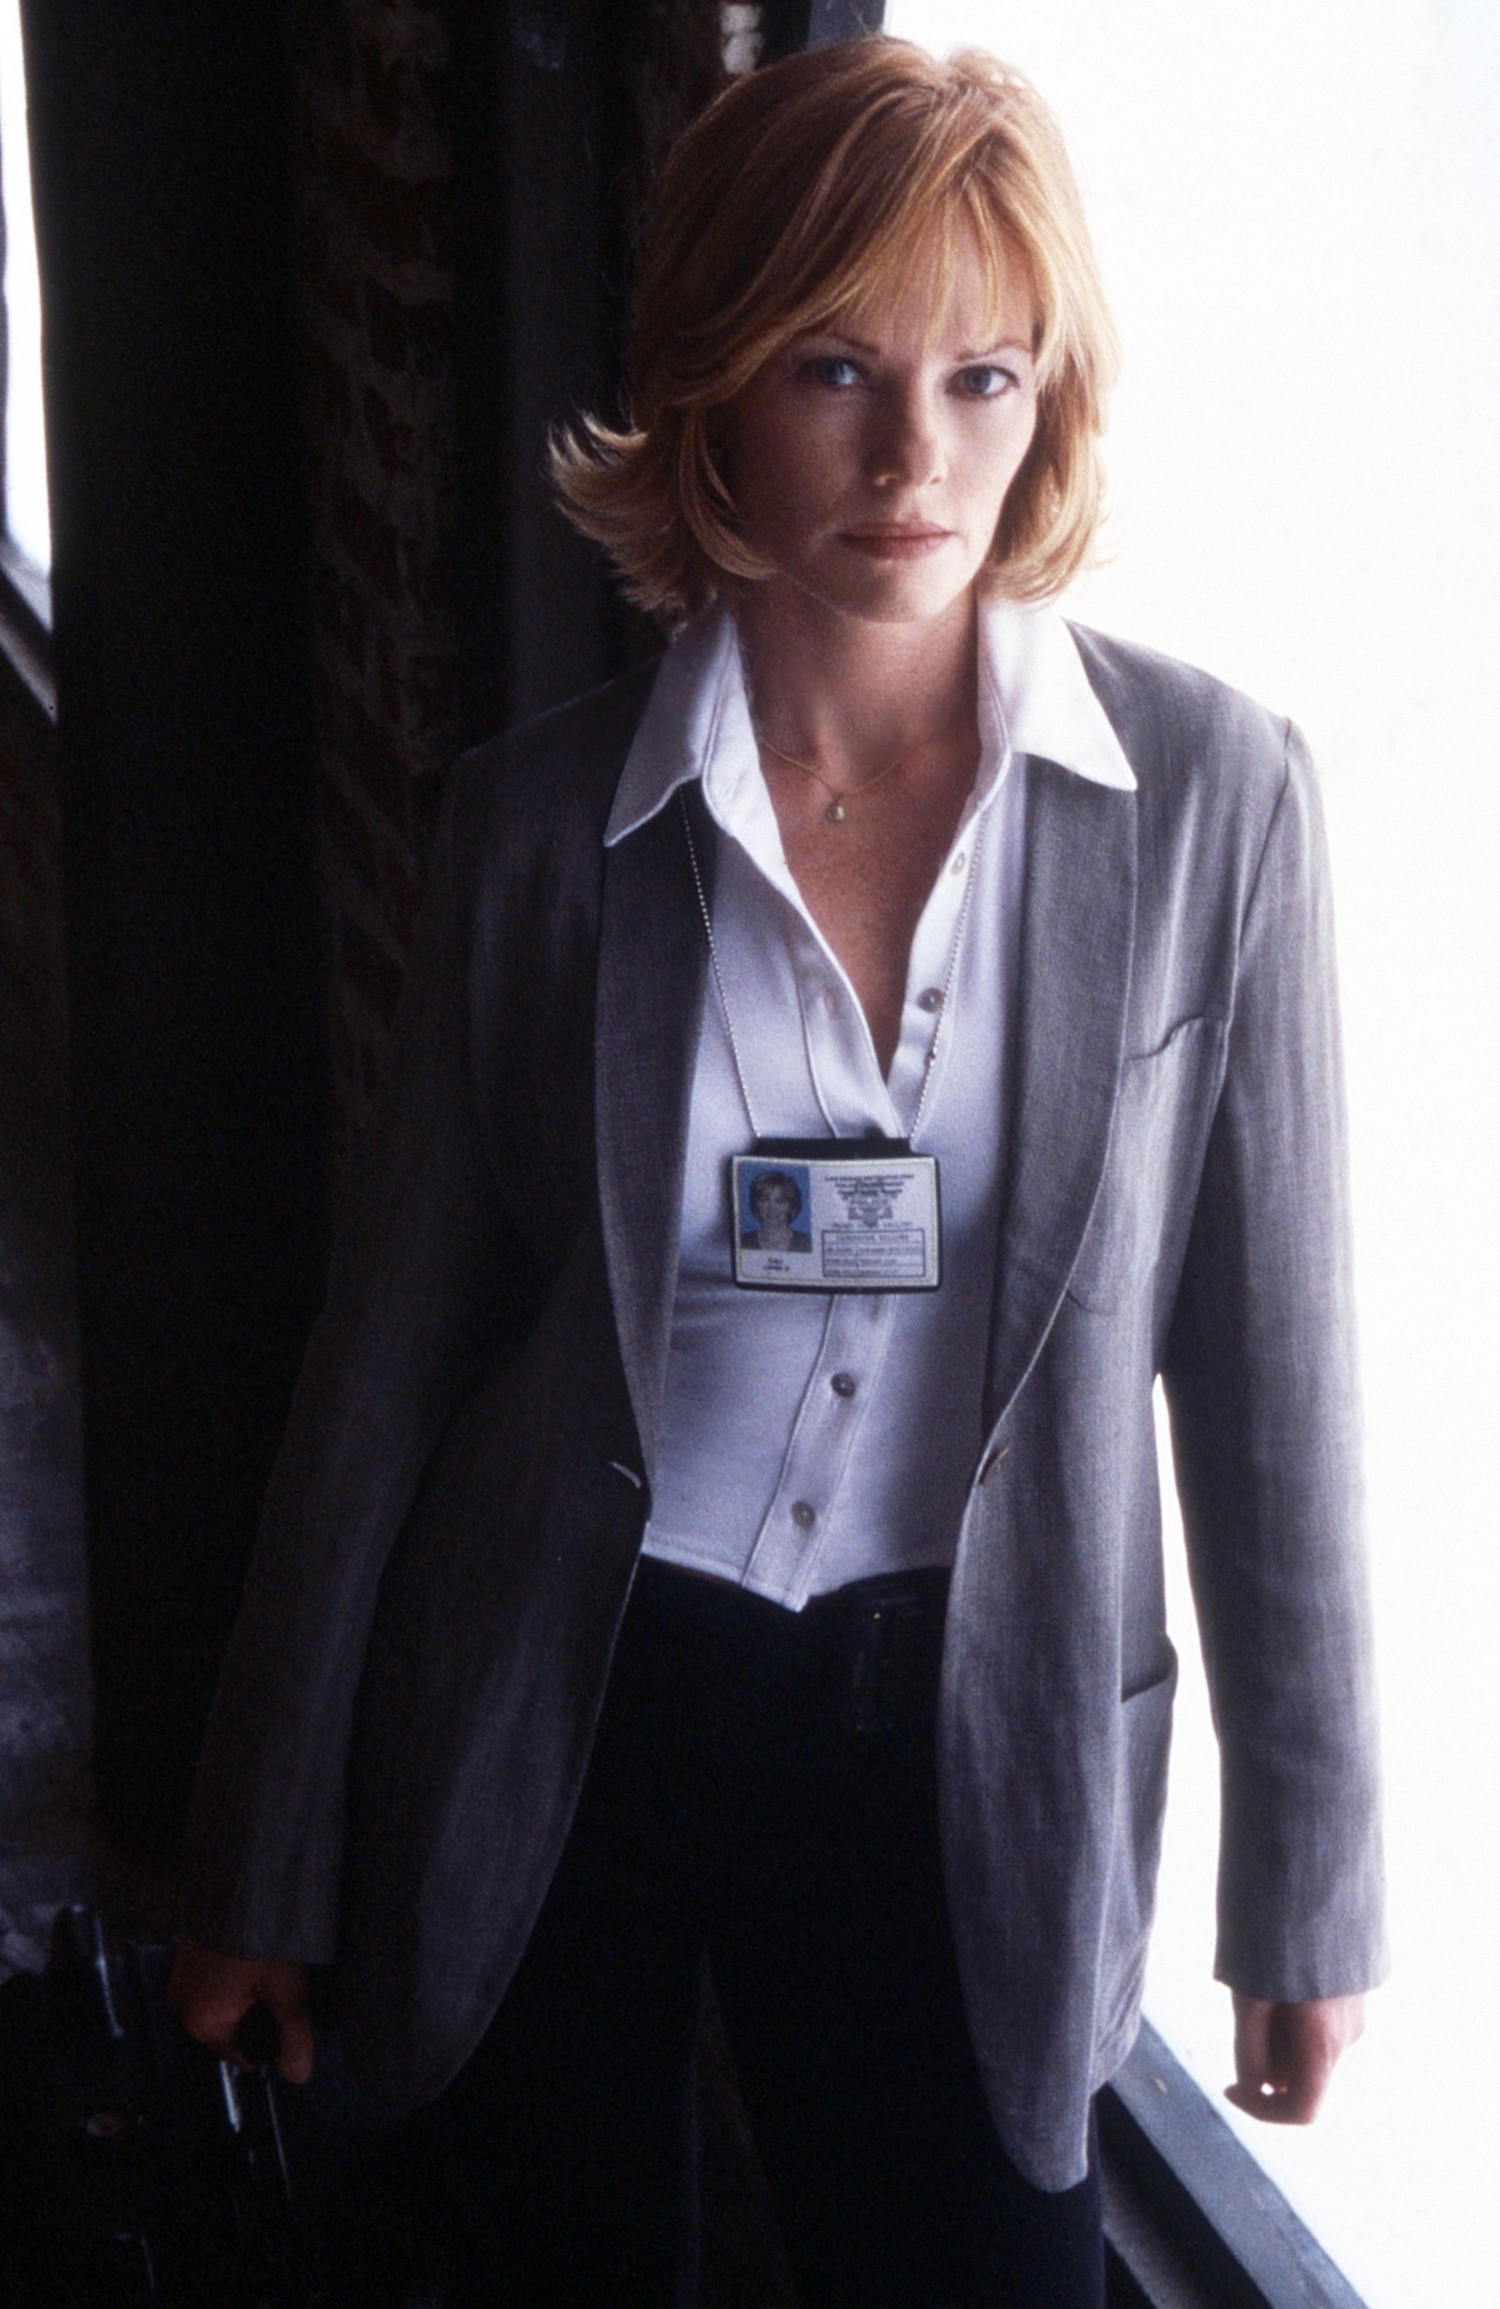 Marg Helgenberger as Catherine in CSI